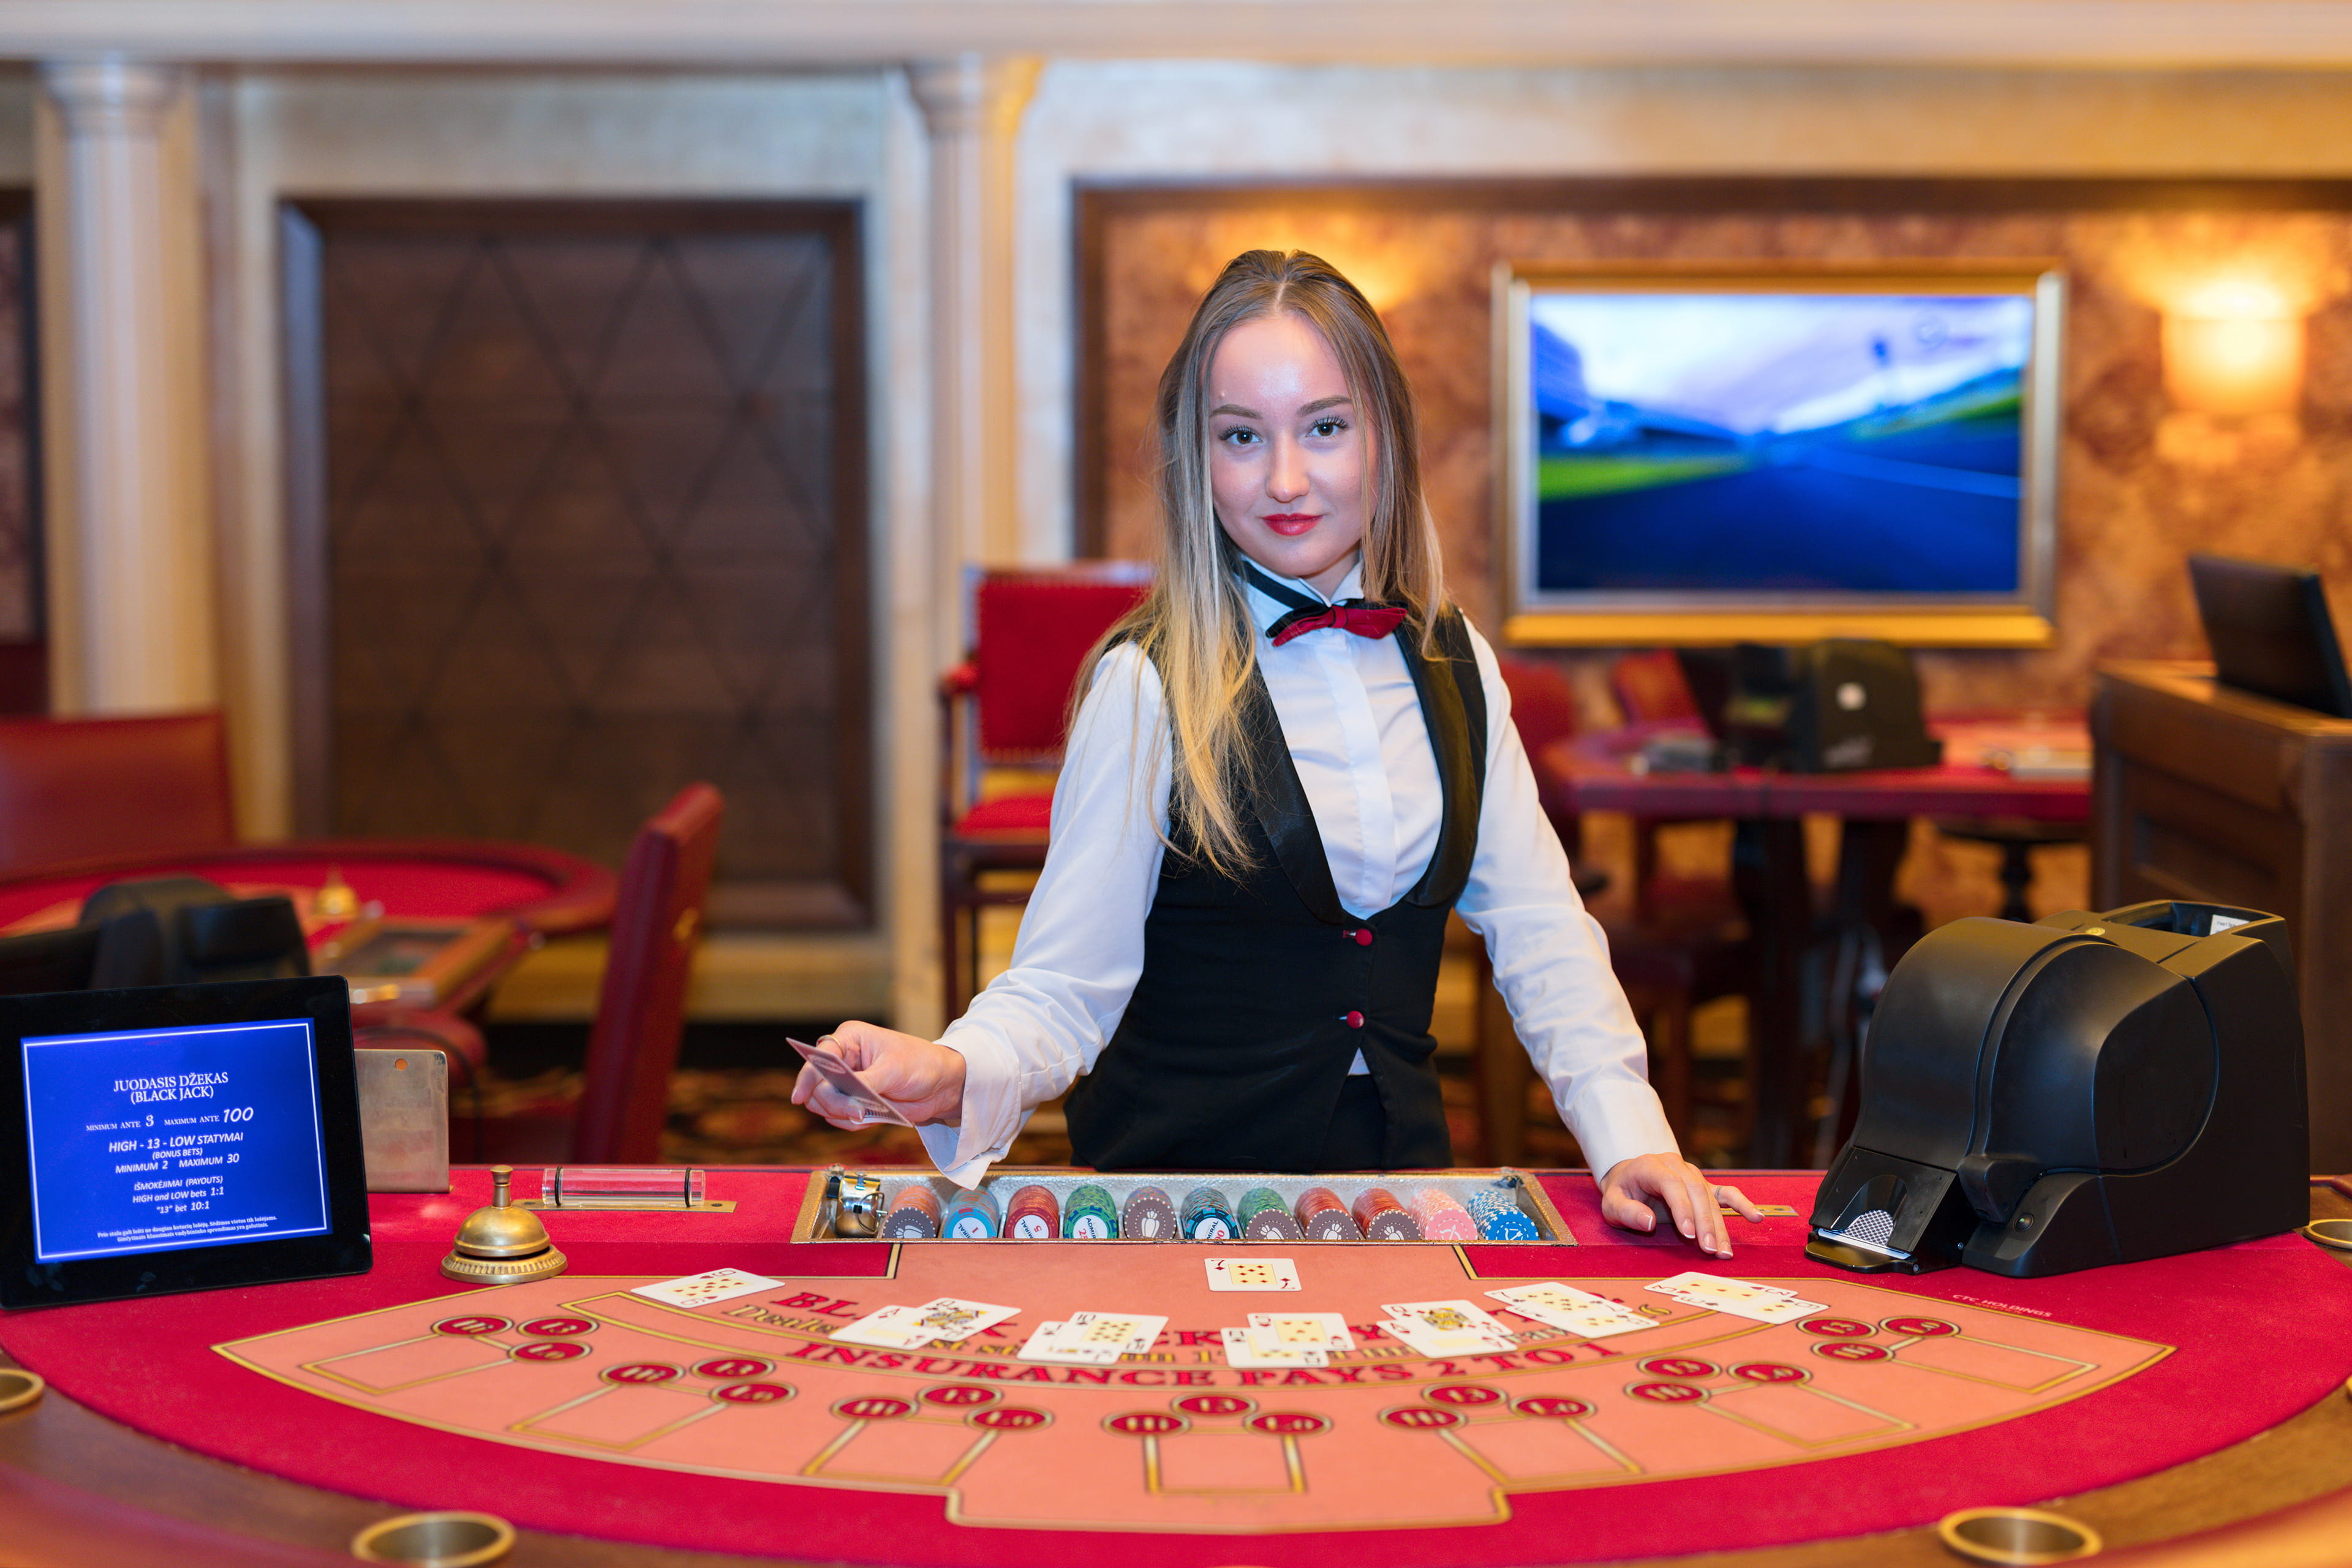 Haben Sie seriöse Online Casinos für Leidenschaft oder Geld gestartet?